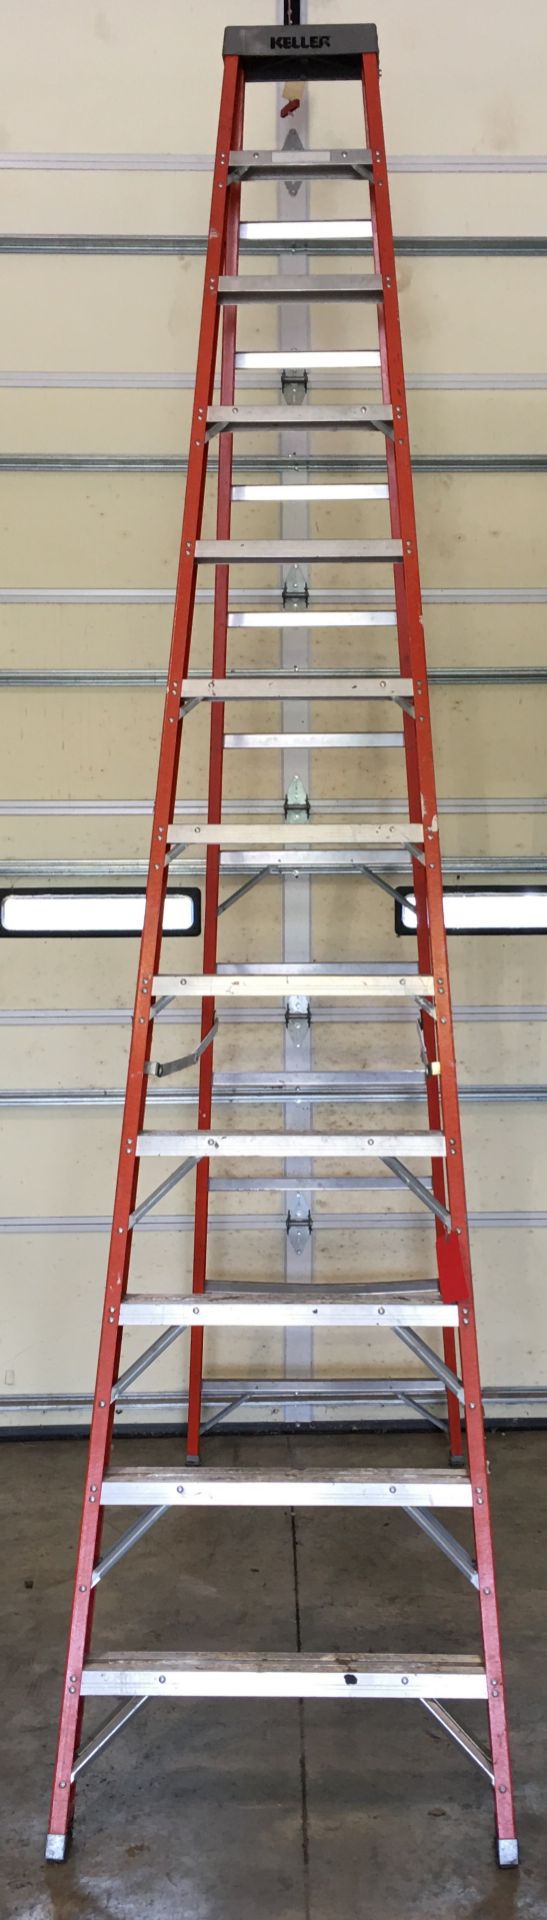 Keller 12Ft Fiberglass step Ladder - Image 3 of 4